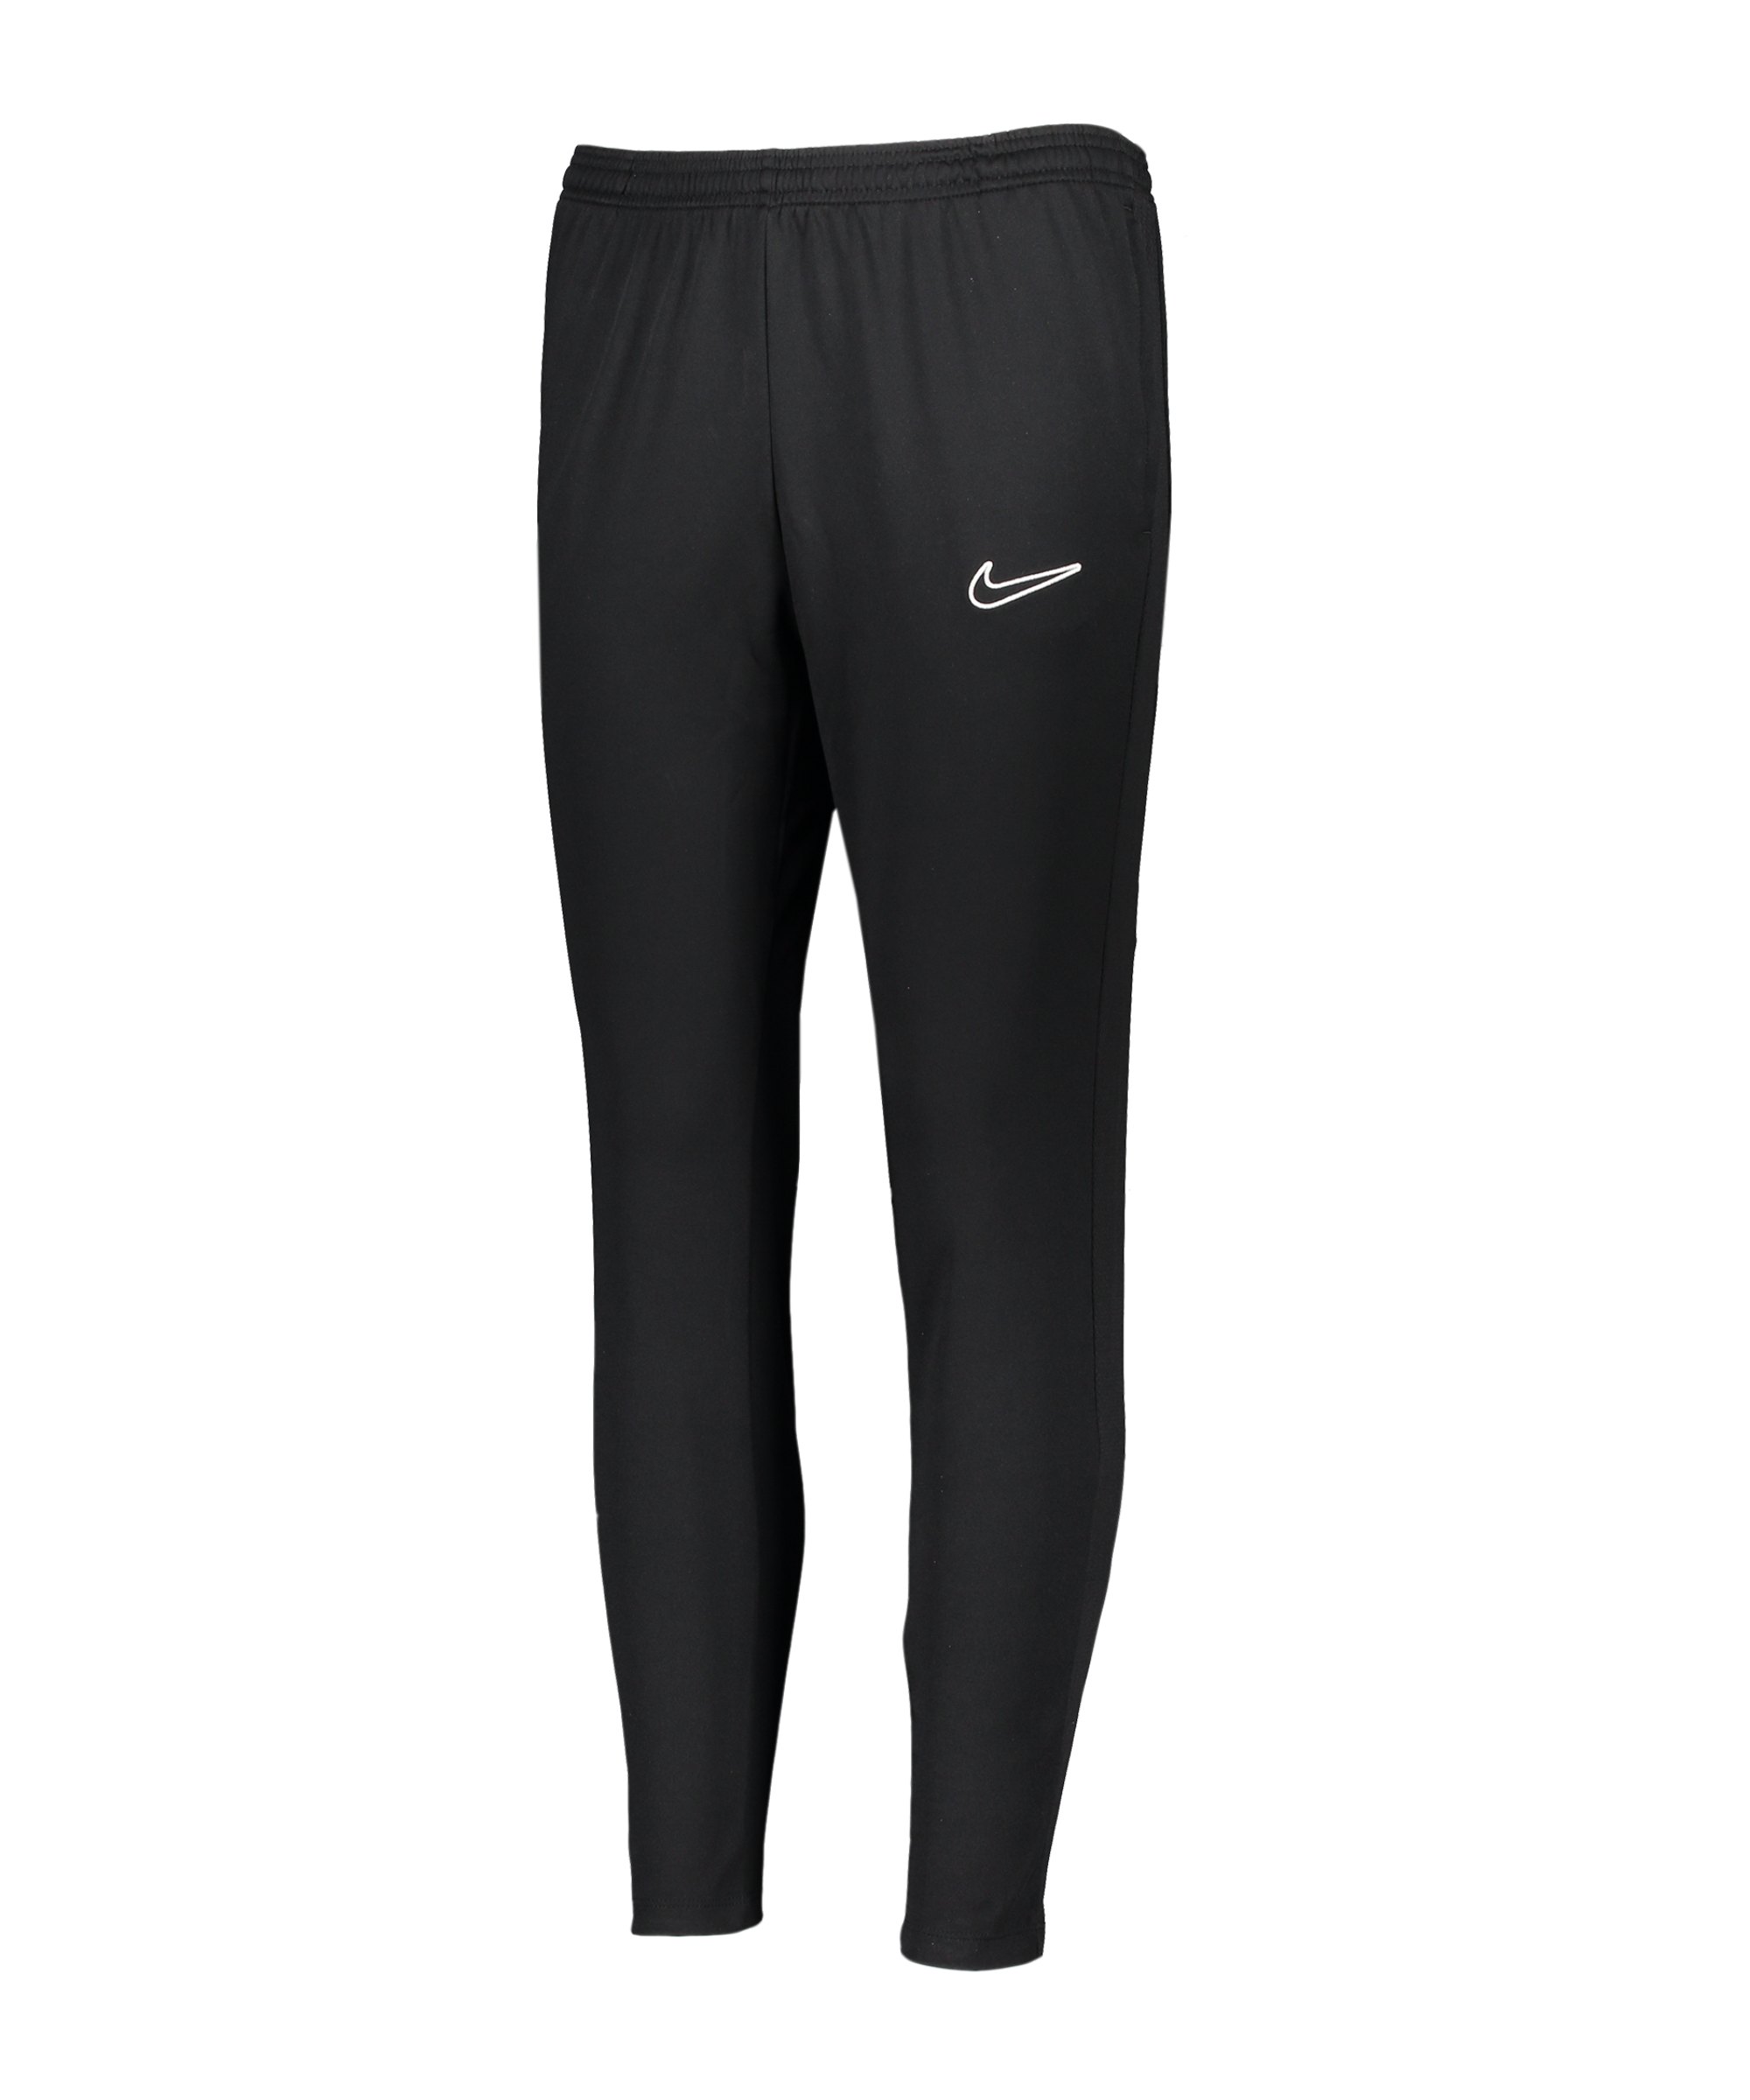 Nike Academy Trainingshose Damen Schwarz F010 - schwarz